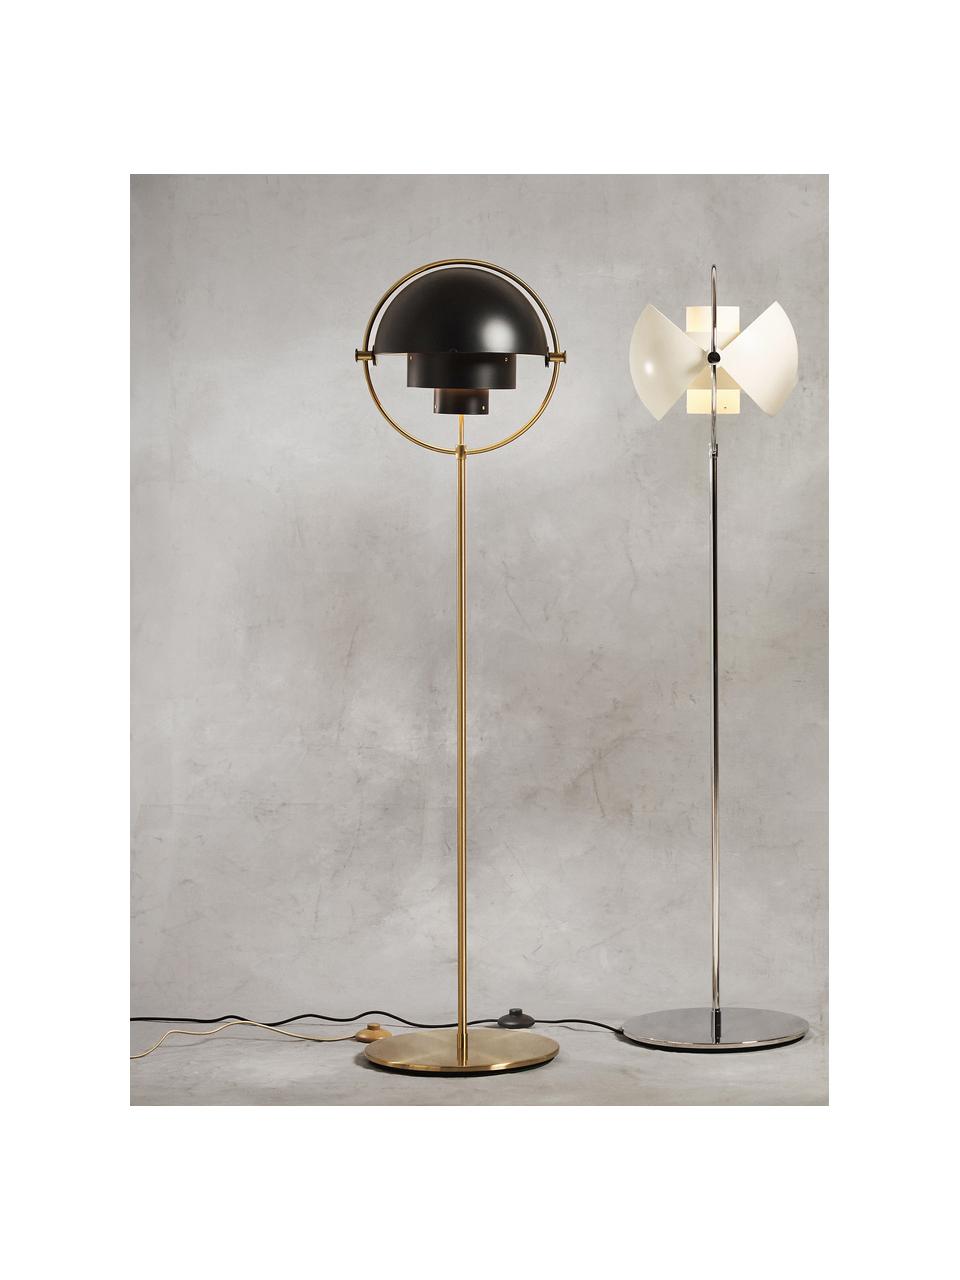 Verstellbare Stehlampe Multi-Lite, Schwarz matt, Goldfarben glänzend, H 148 cm